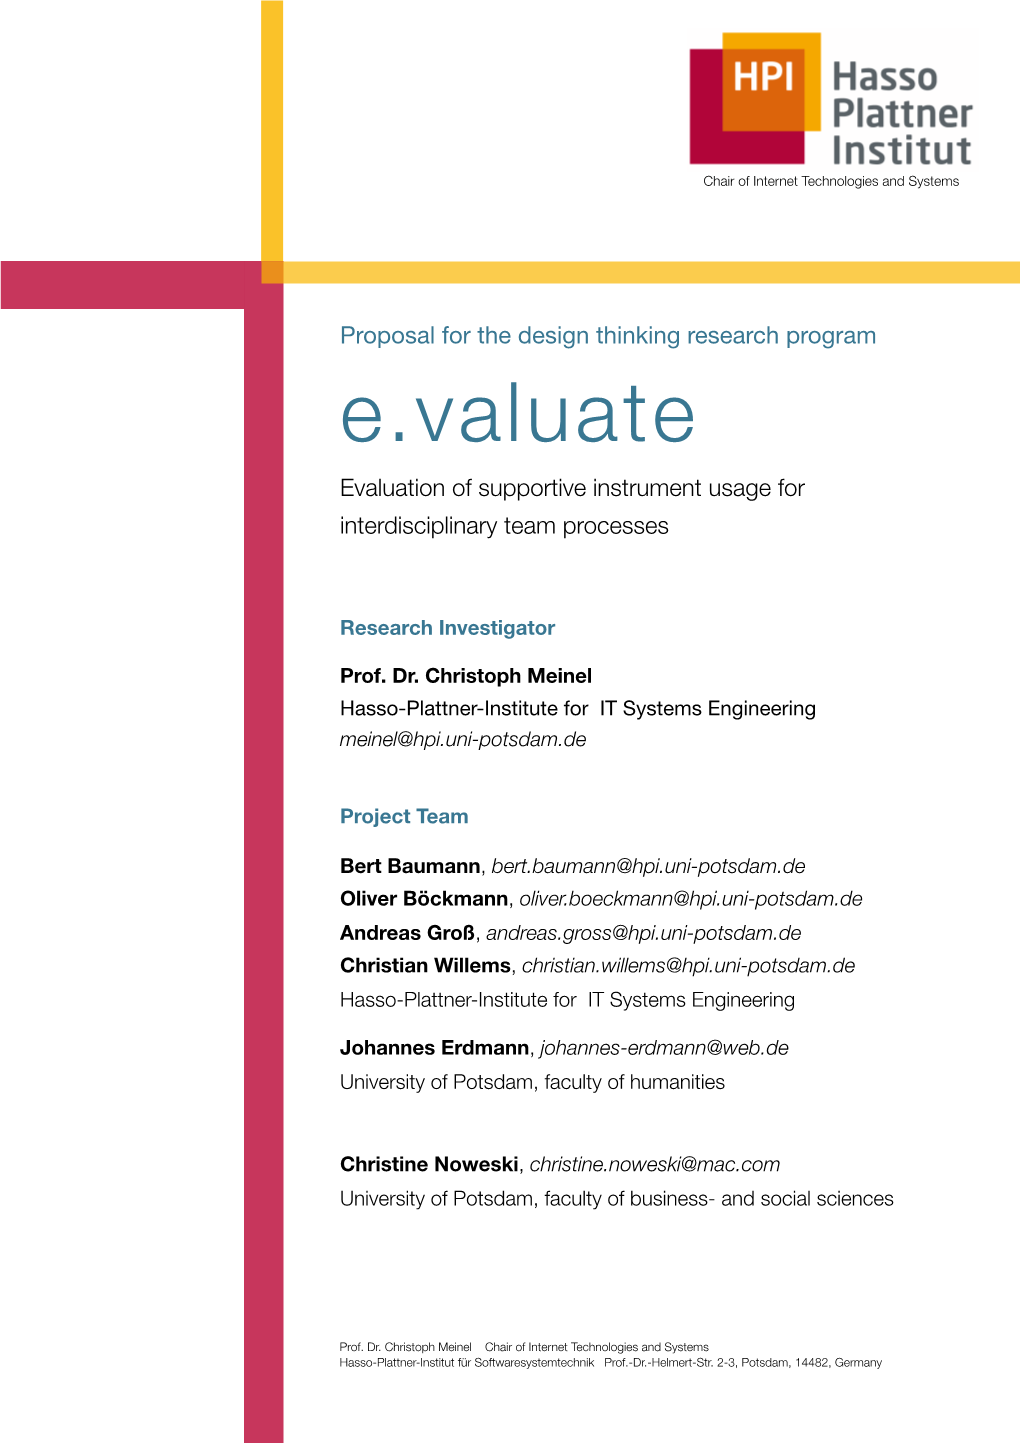 E.Valuate Proposal